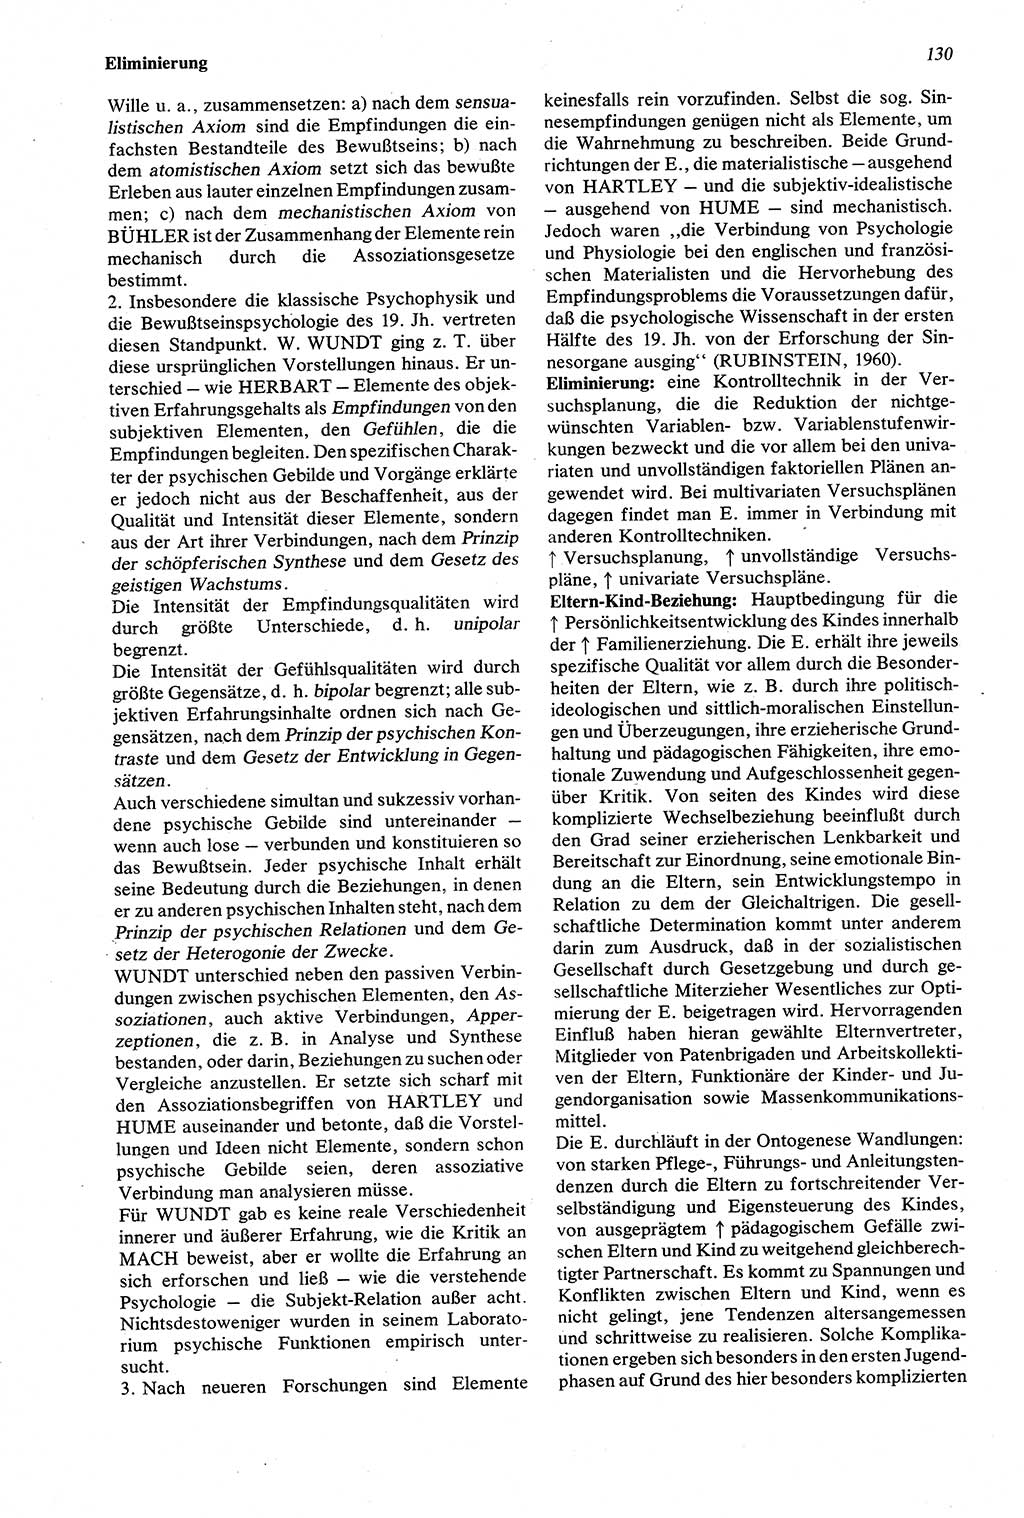 Wörterbuch der Psychologie [Deutsche Demokratische Republik (DDR)] 1976, Seite 130 (Wb. Psych. DDR 1976, S. 130)